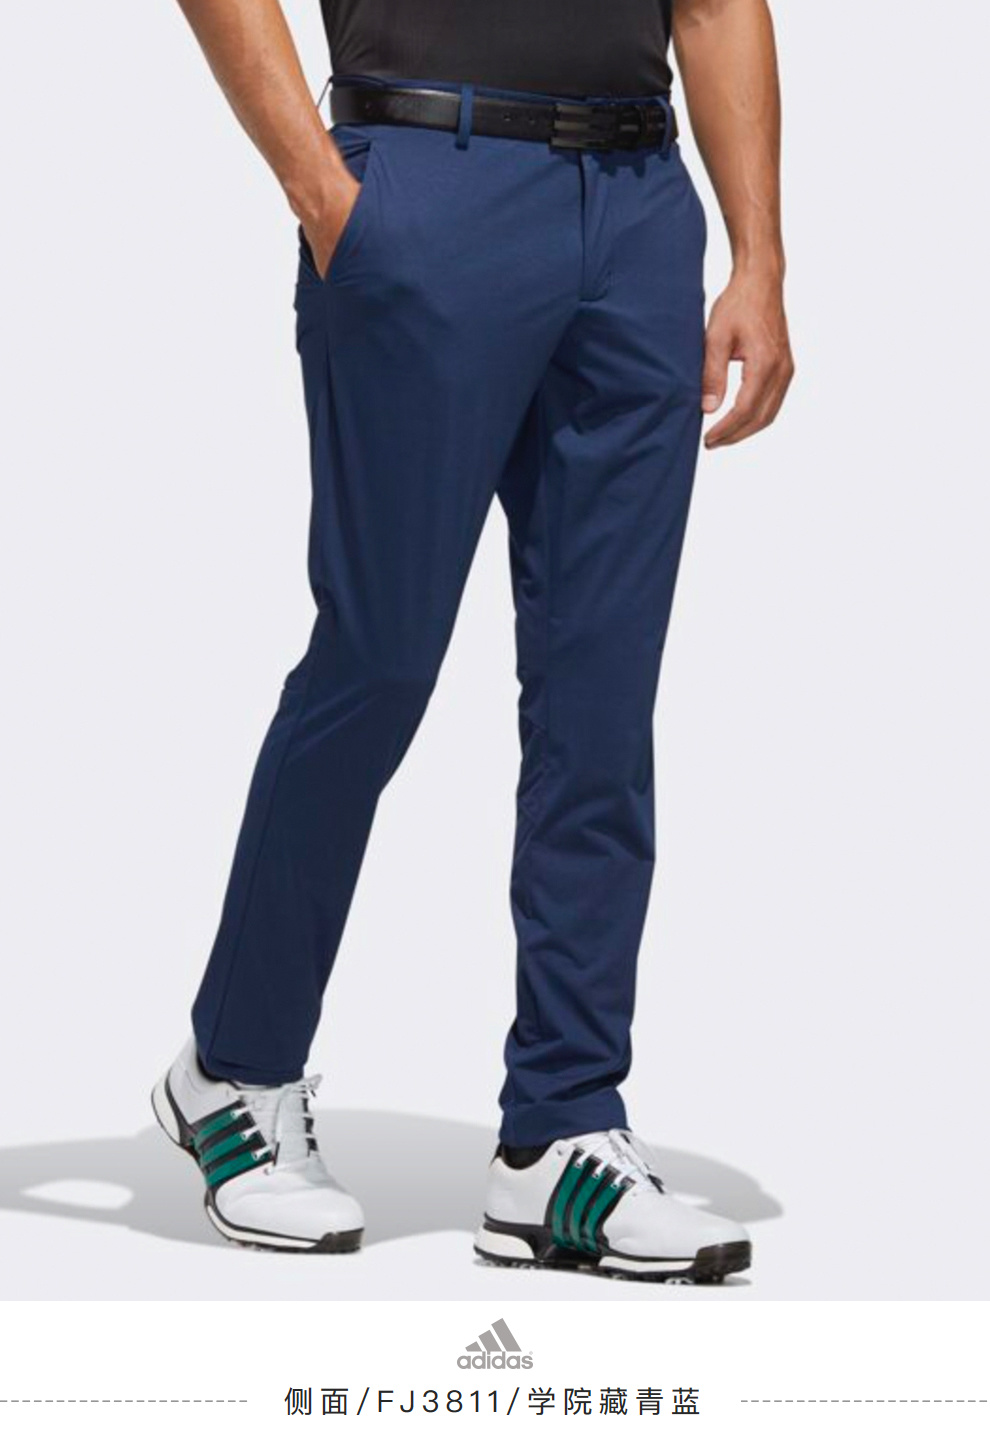 【新品】Adidas阿迪达斯高尔夫服装男士运动长裤FJ3811学院藏青蓝